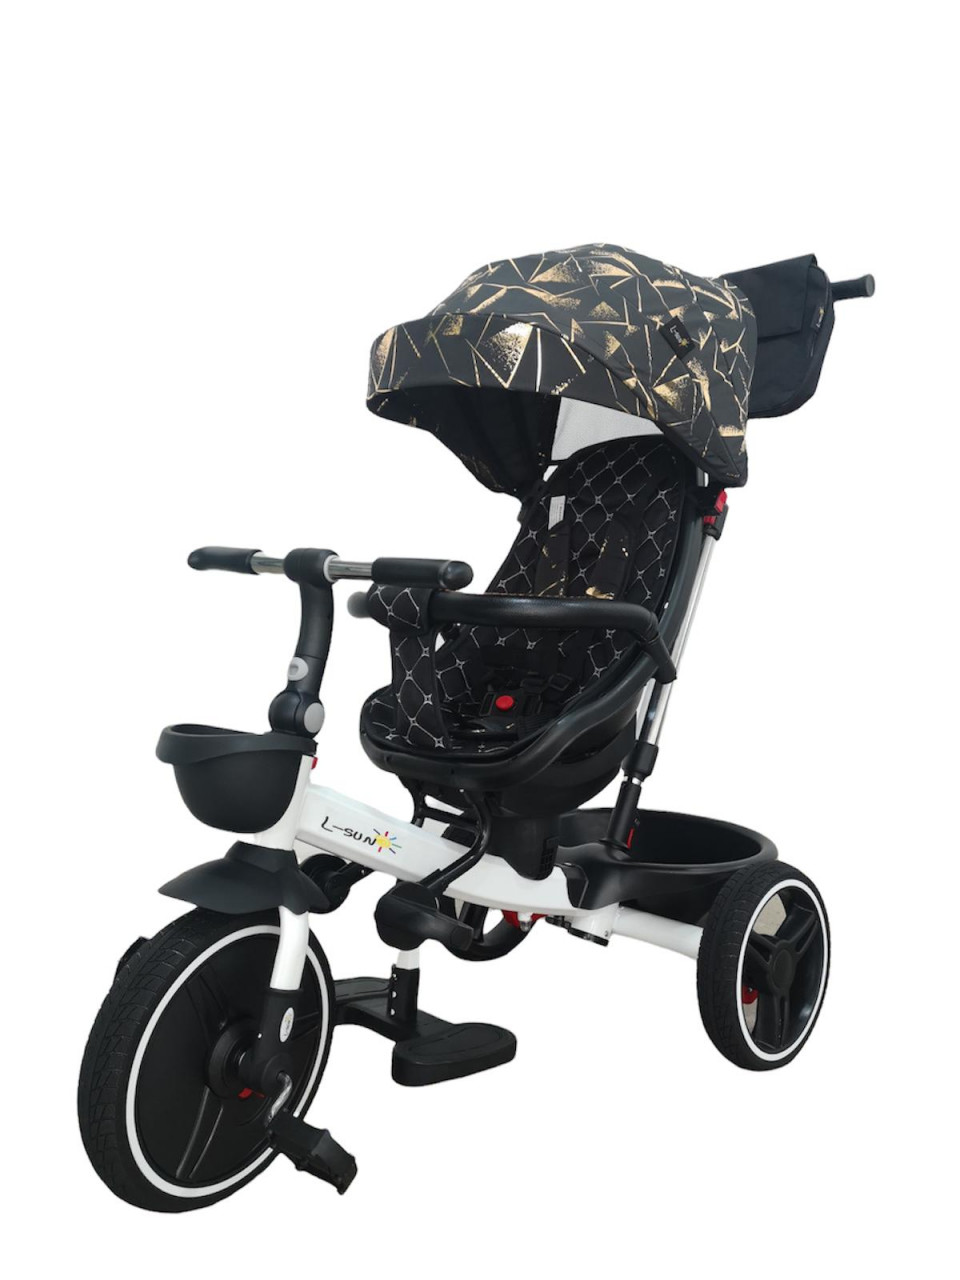 scaun auto copii cu pozitie de somn Tricicleta pliabila cu scaun reversibil si pozitie de somn, Negru-Auriu, TMR-44-auriu